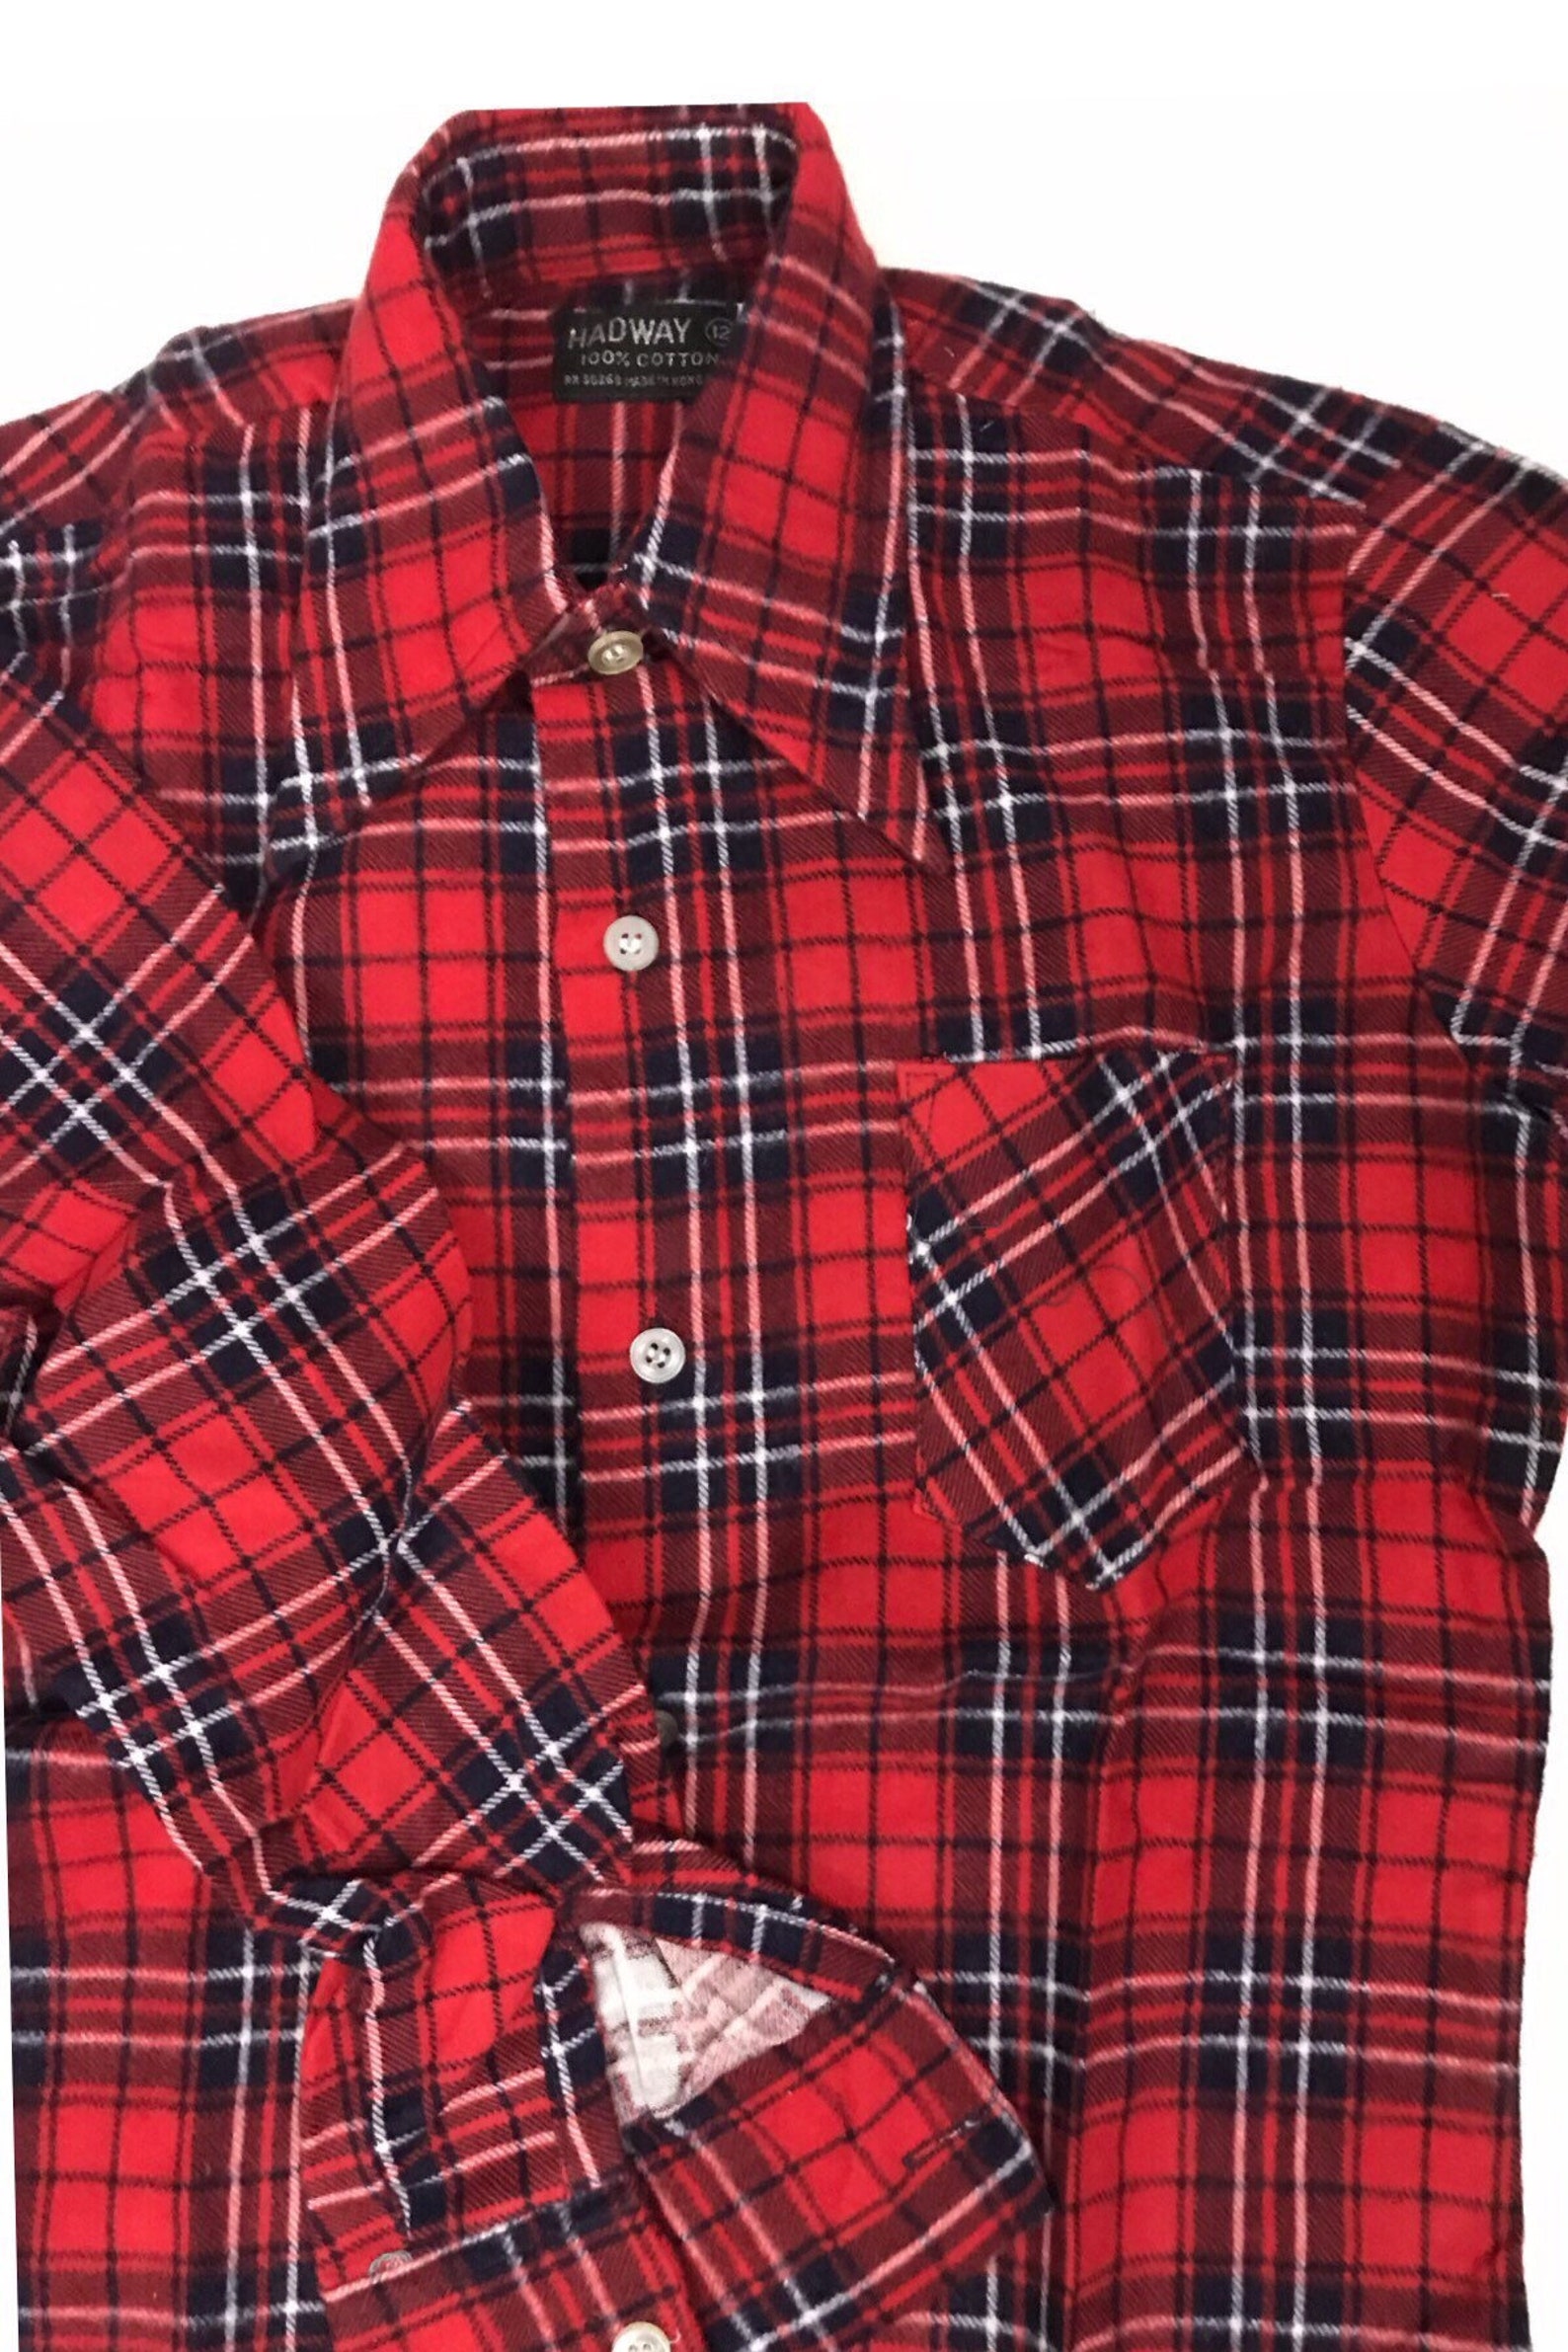 1980s Boy Shirt / Red Cotton Flannel Button Down Shirt Unworn | Etsy